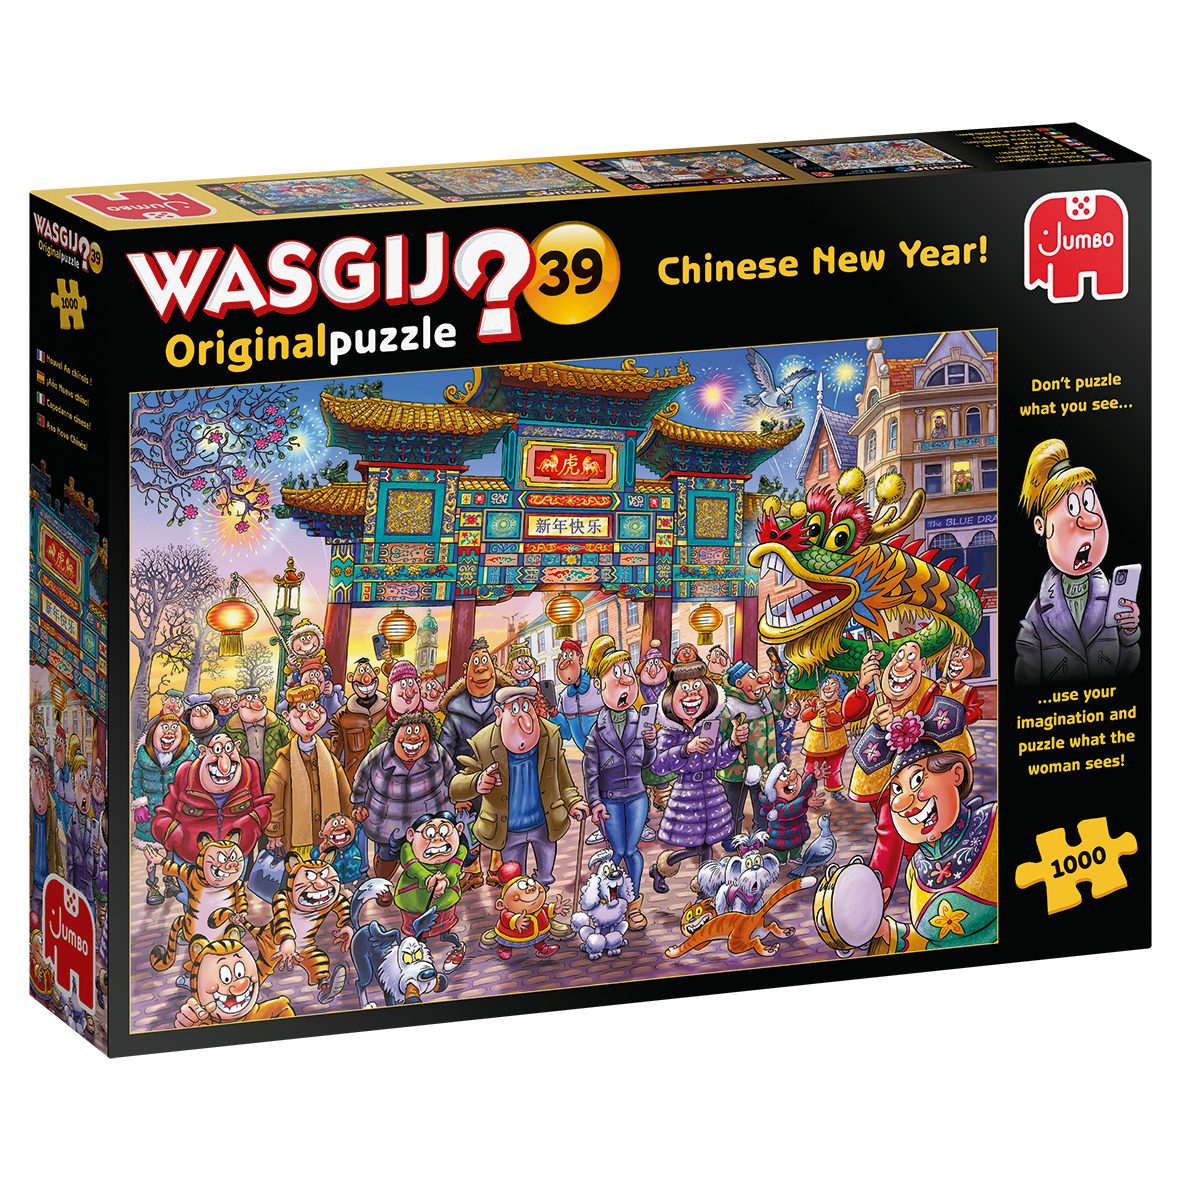 Jumbo Spiele Puzzle Wasgij Original 39 Chinesisches Neujahr, 1000 Puzzleteile